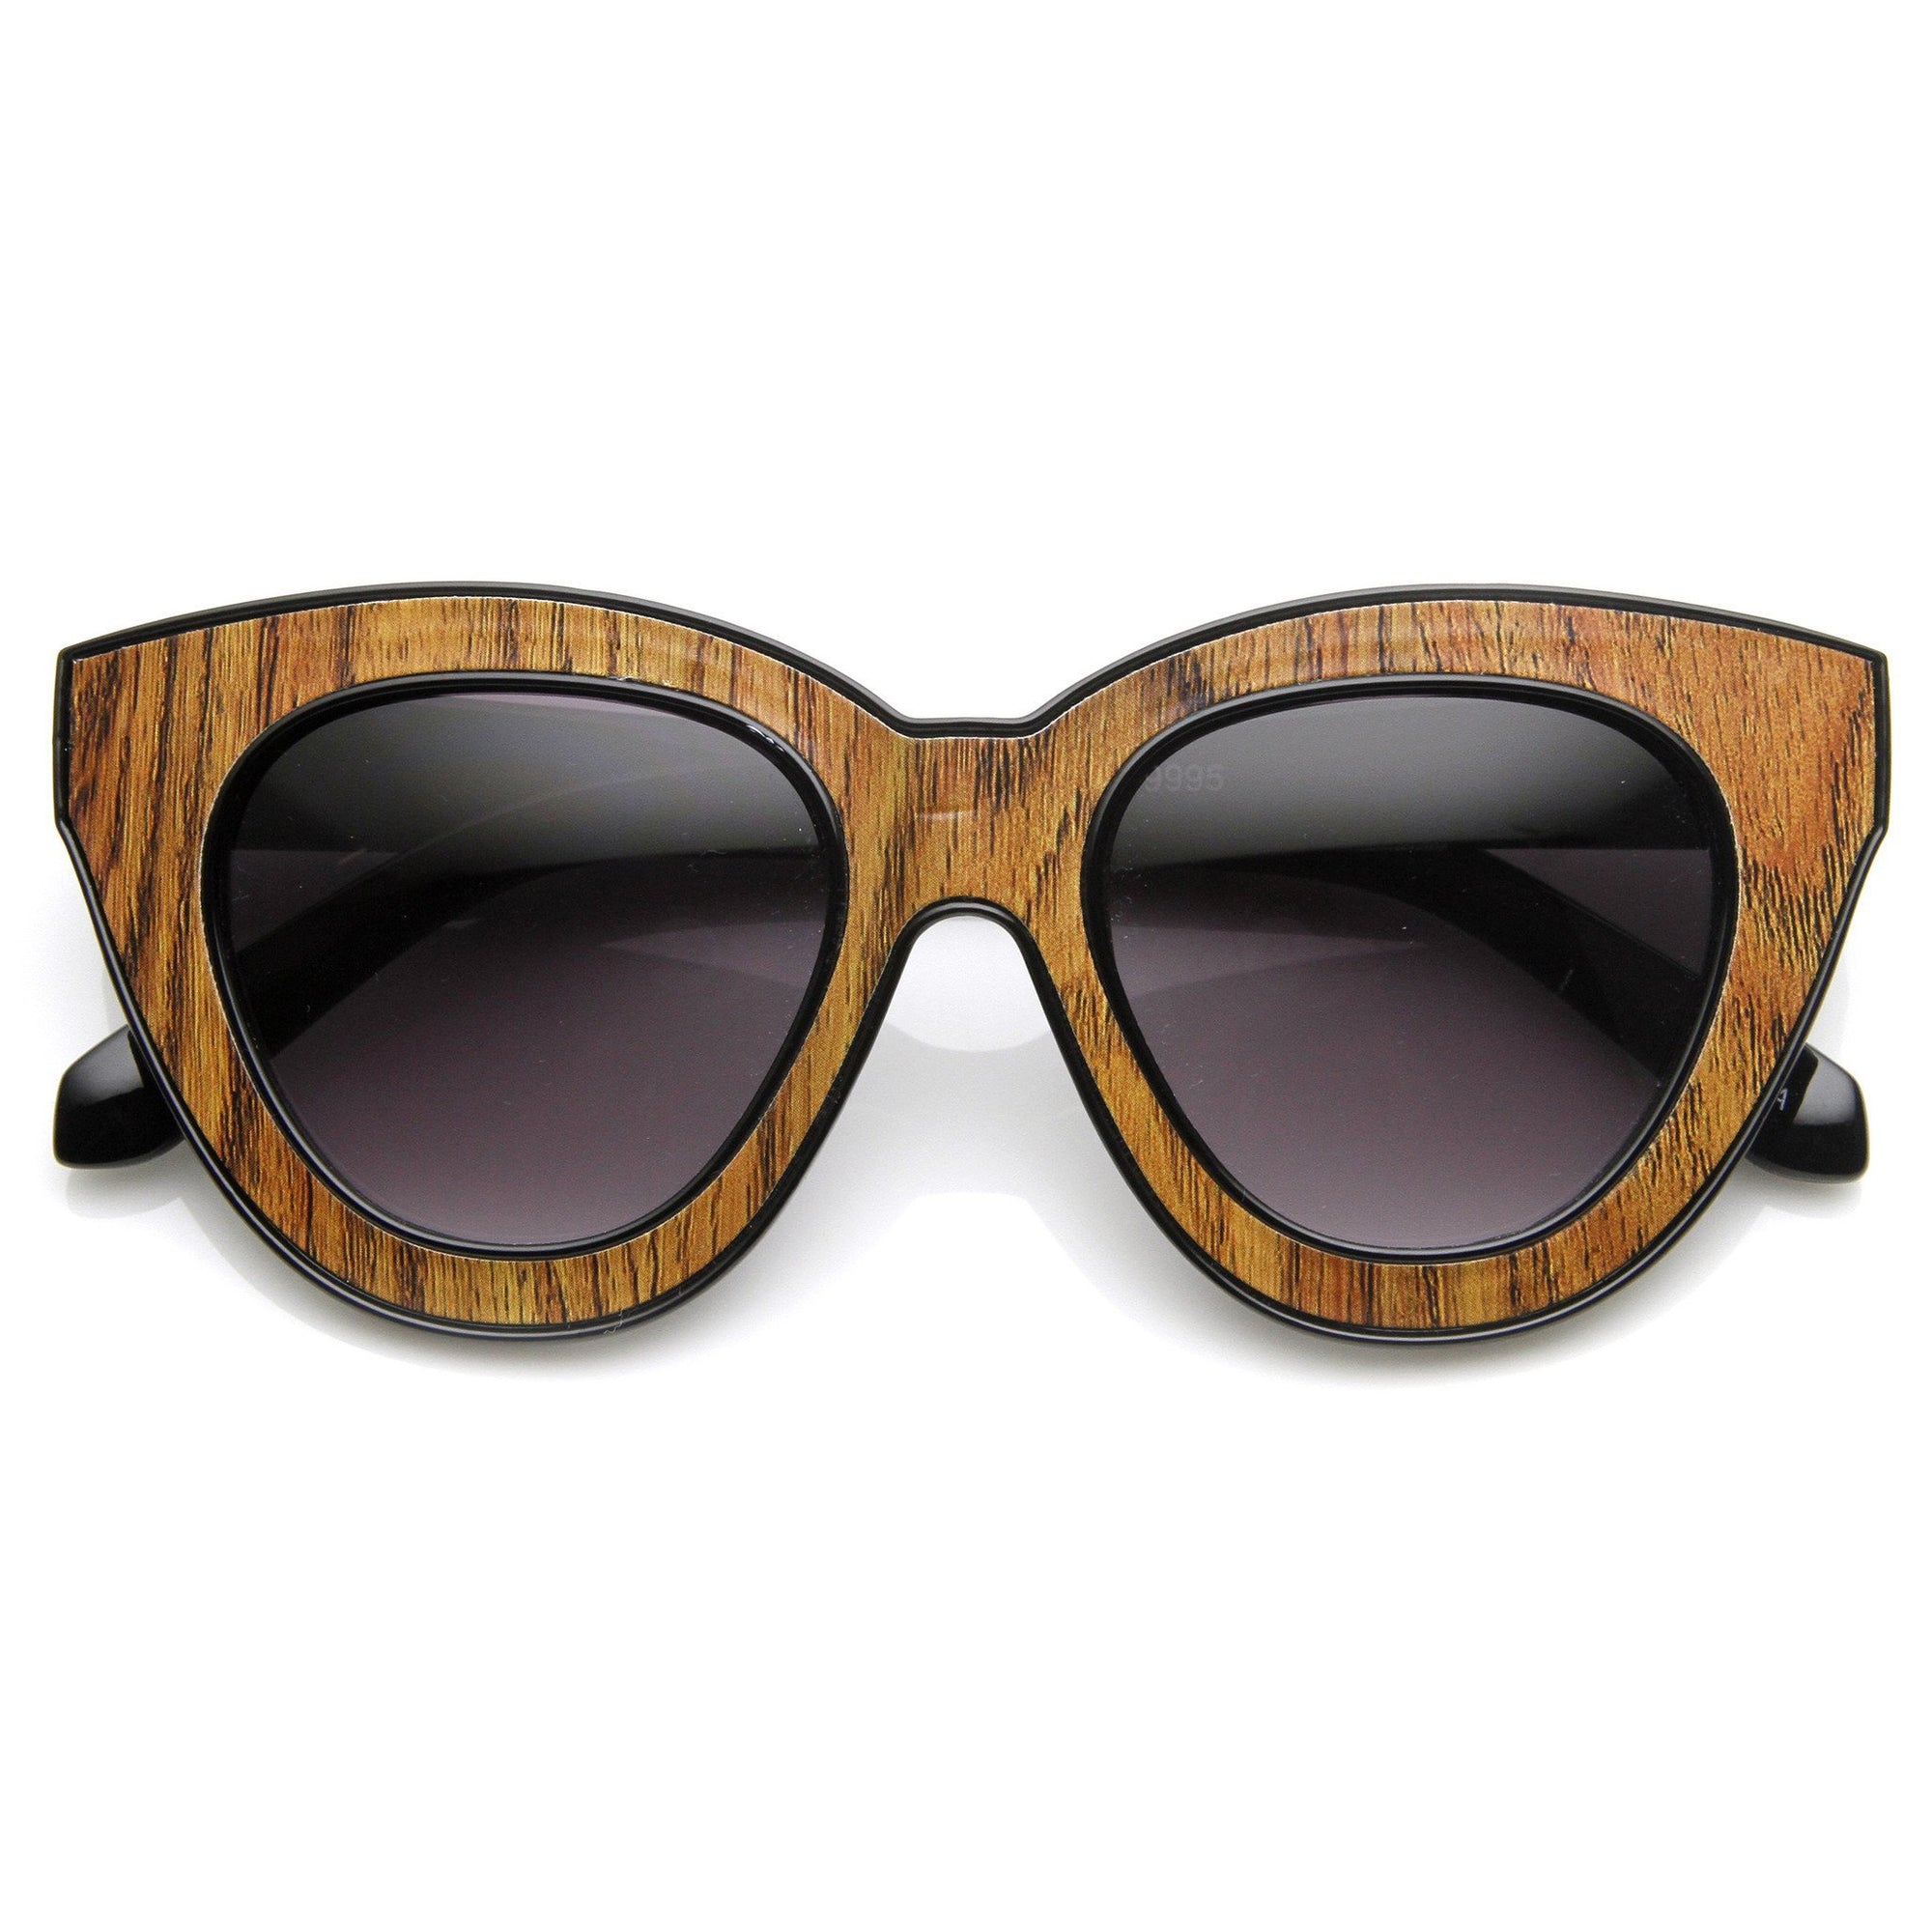 Indie Trendy Gafas de sol tipo ojo de gato extragrandes con corte en bloque para mujer 9160